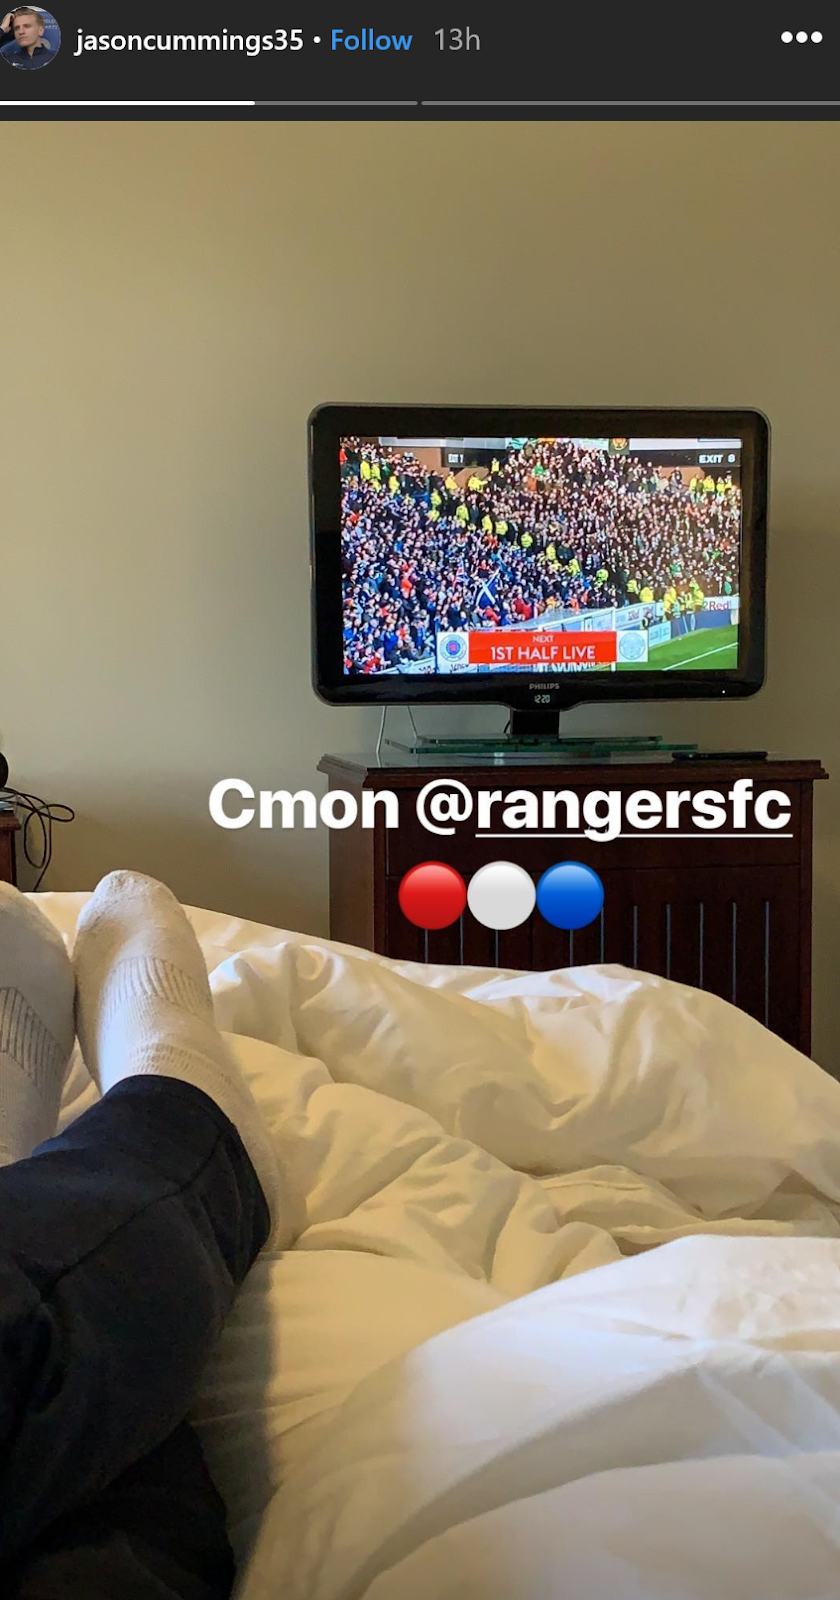 E-Rangers striker announces desire to come home – will it happen?